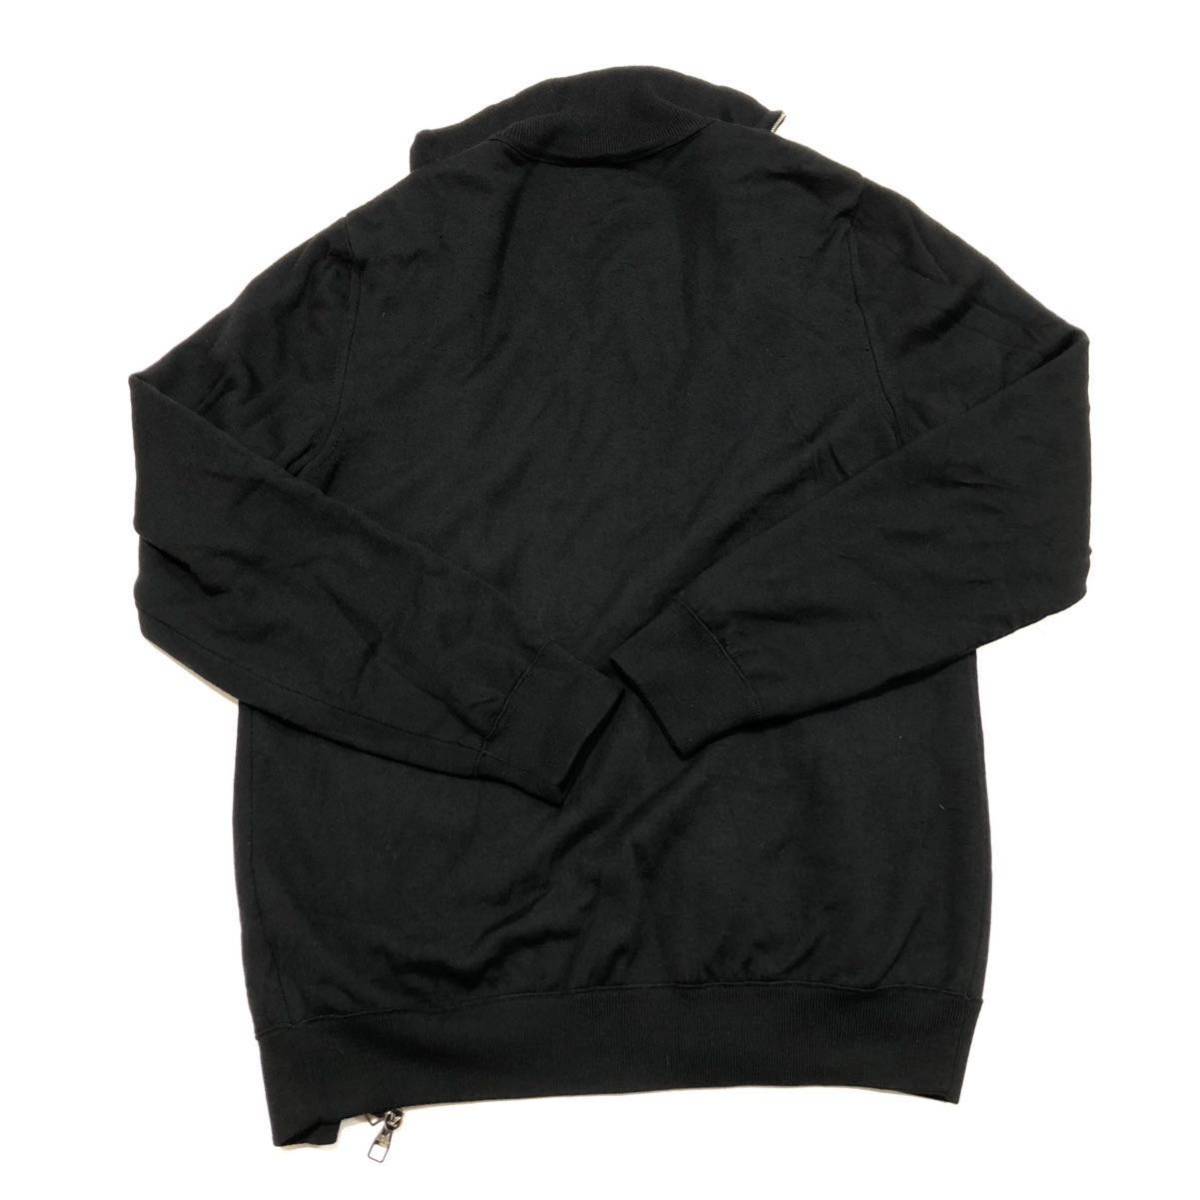 正規品Louis Vuitton黒セーター(肩にロゴあり)Mサイズ